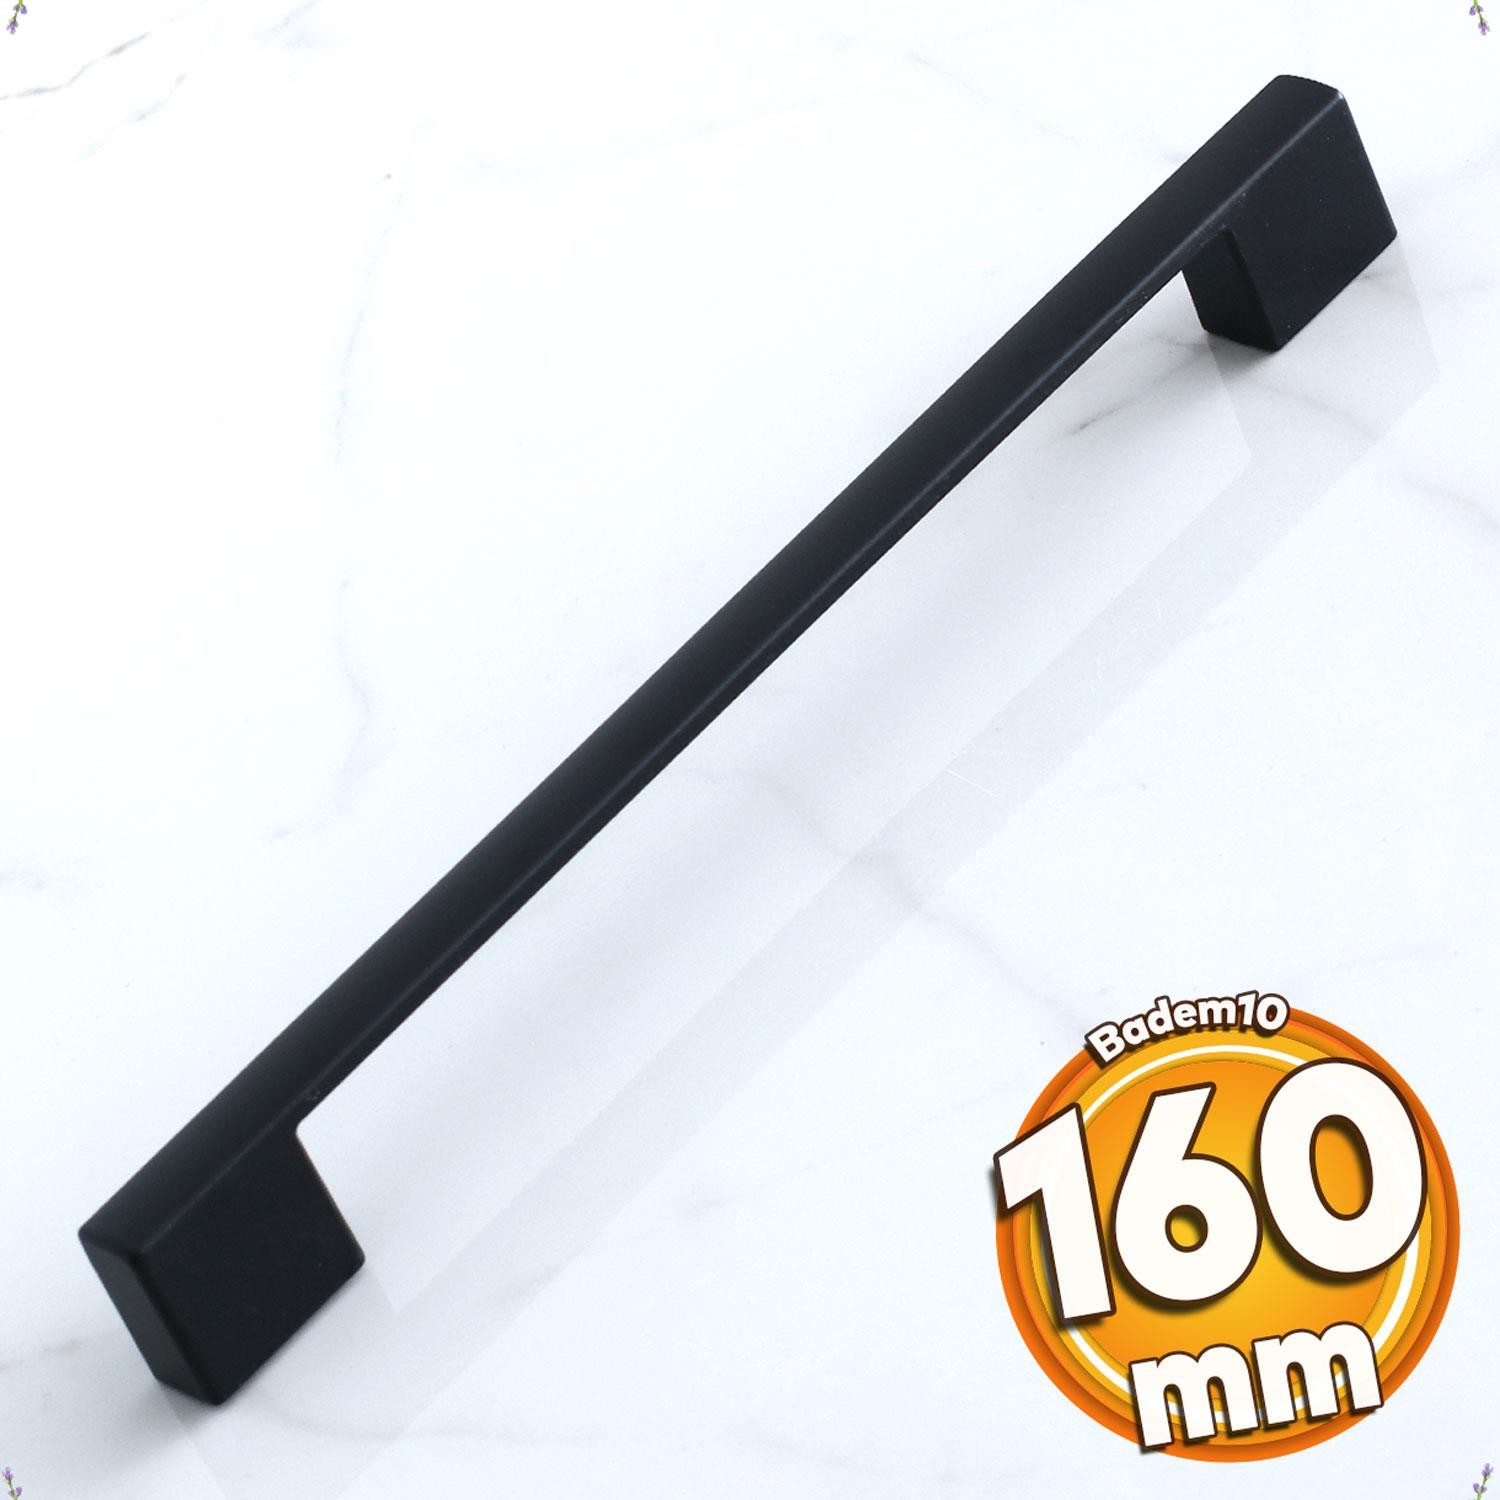 Kale 160 mm Siyah Kulp Metal Mobilya Mutfak Çekmece Kulpları Dolap Dolabı Kapak Kulbu Kulpu 16 cm